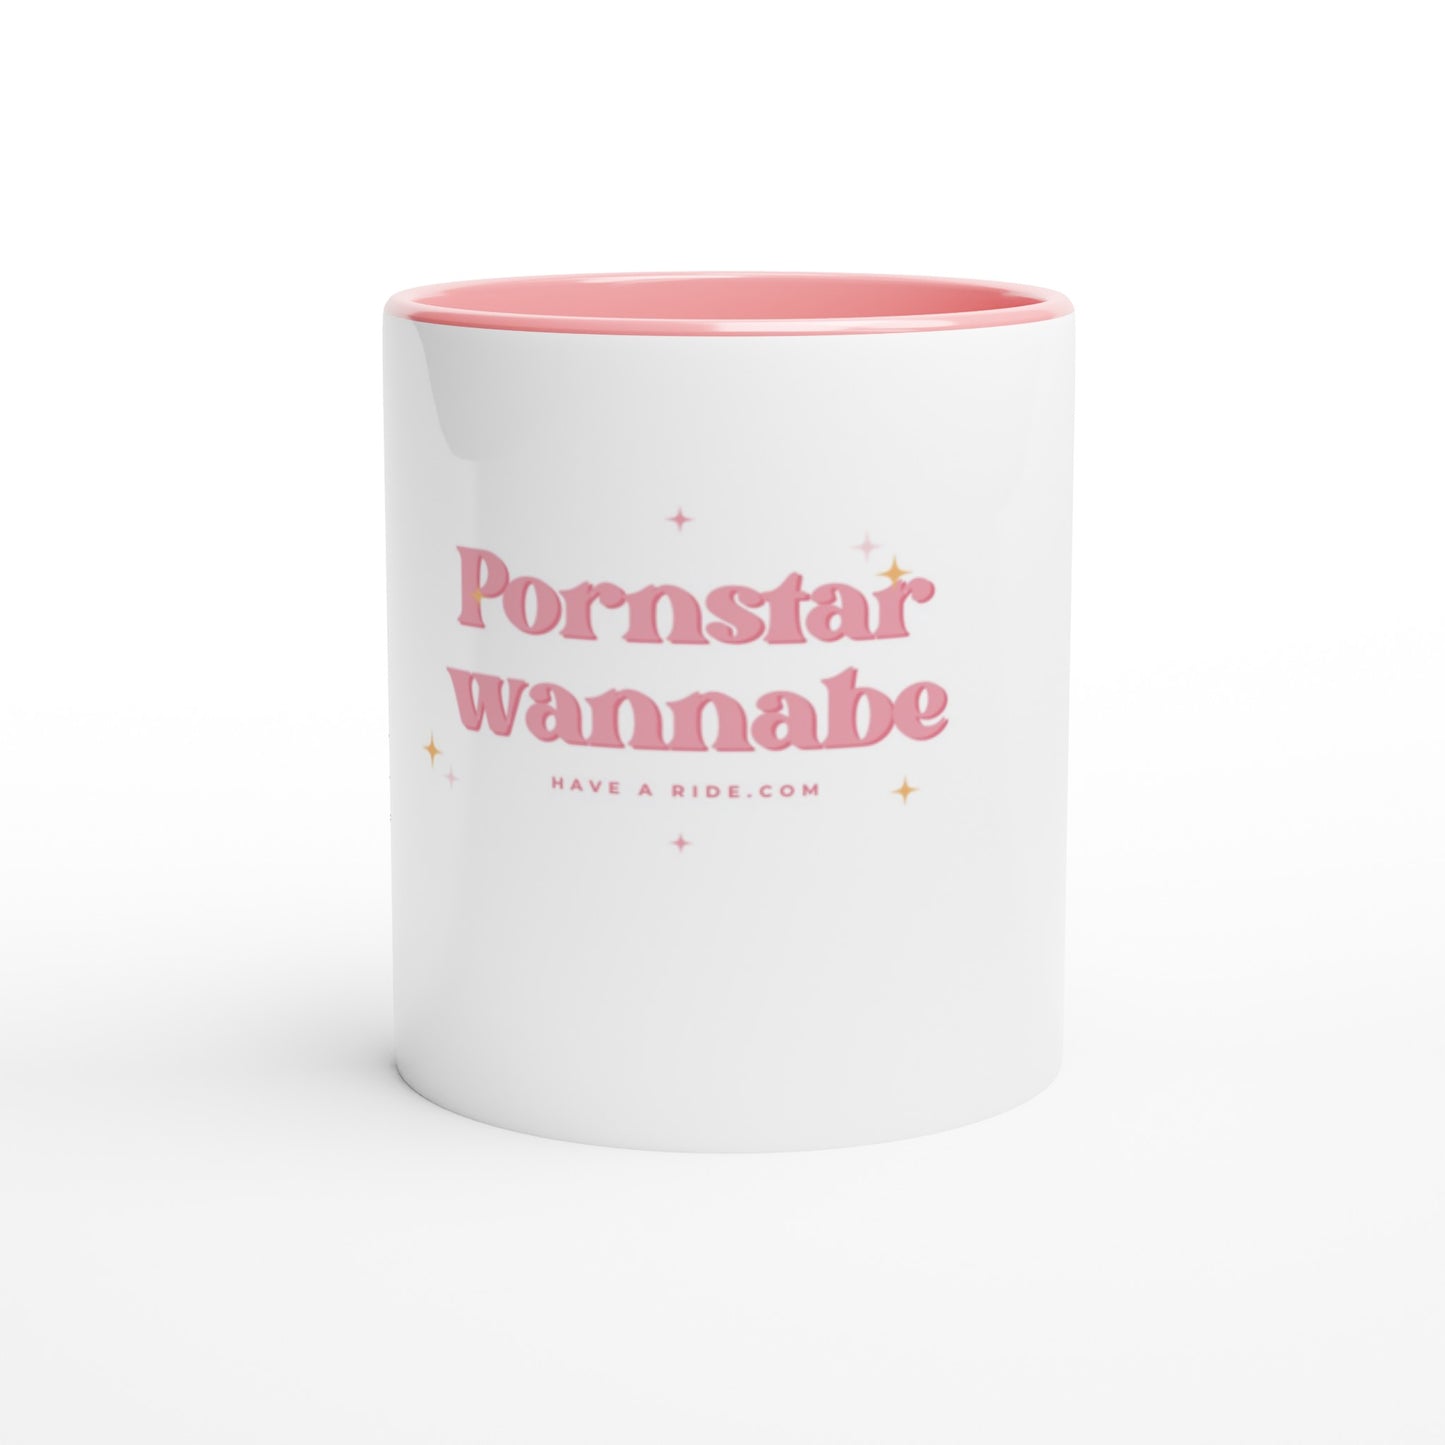 Pornstar wannabe - White 11oz Ceramic Mug with Color Inside